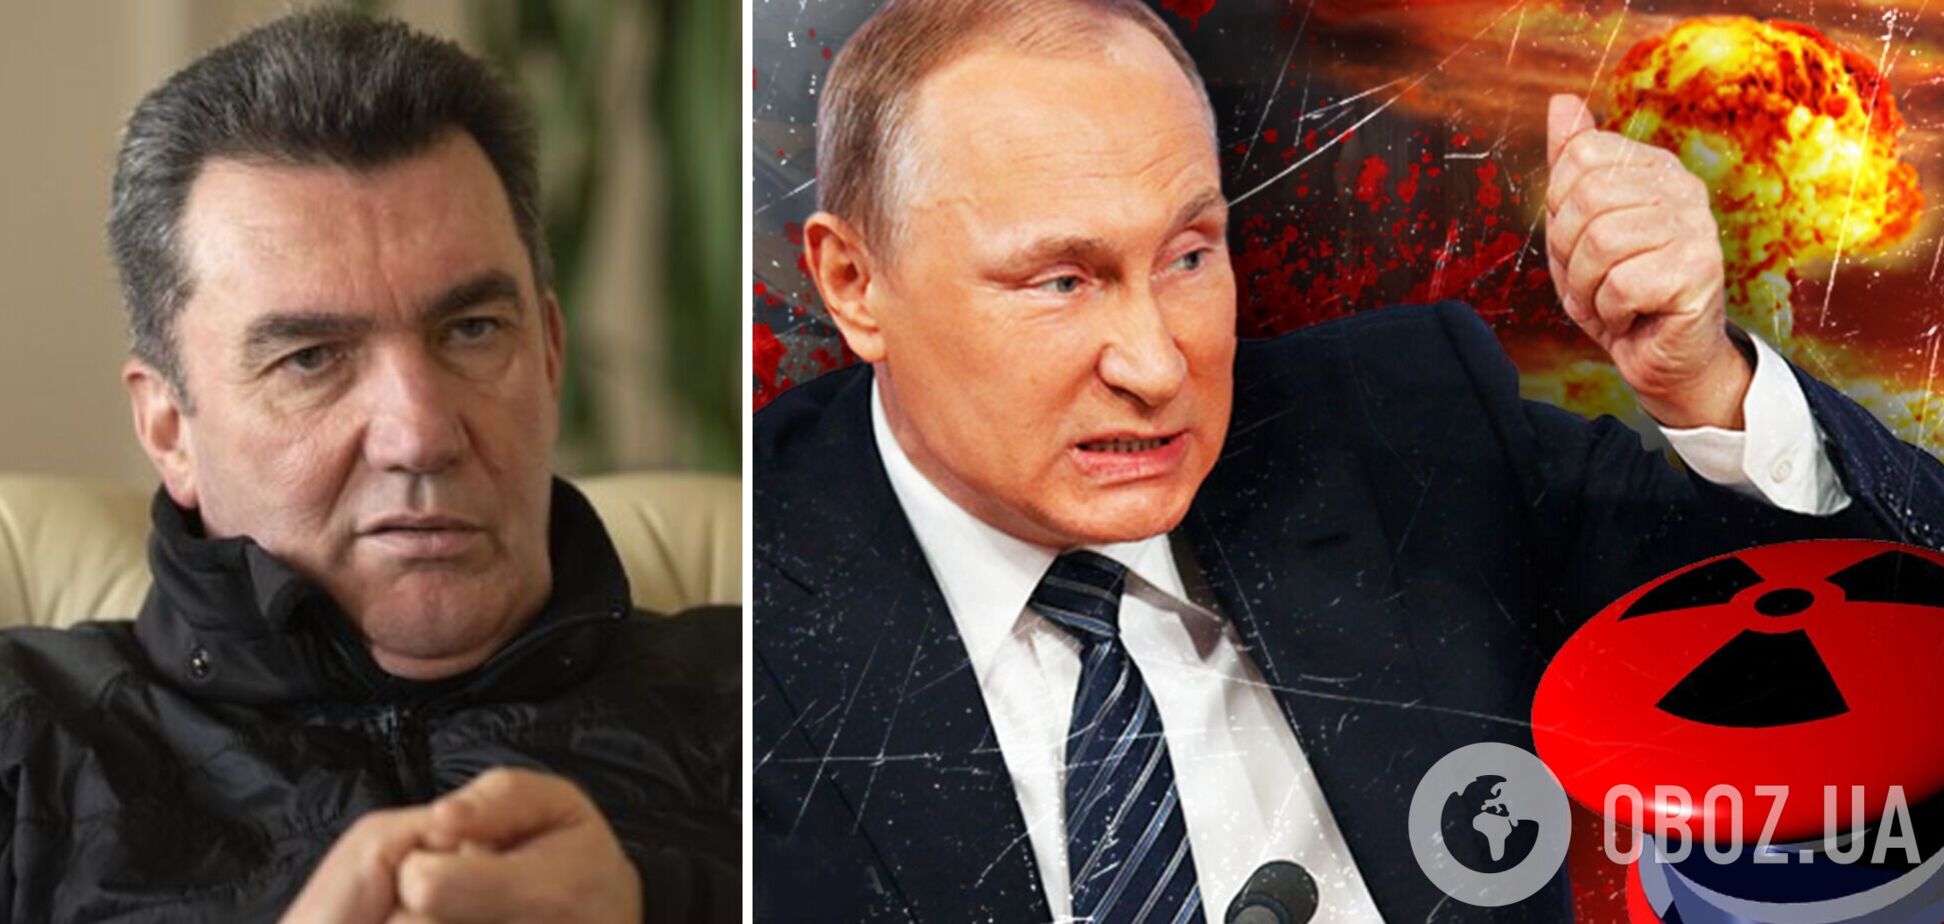 'Сила как последний аргумент тупых': Данилов объяснил, что стоит за ядерными угрозами Путина